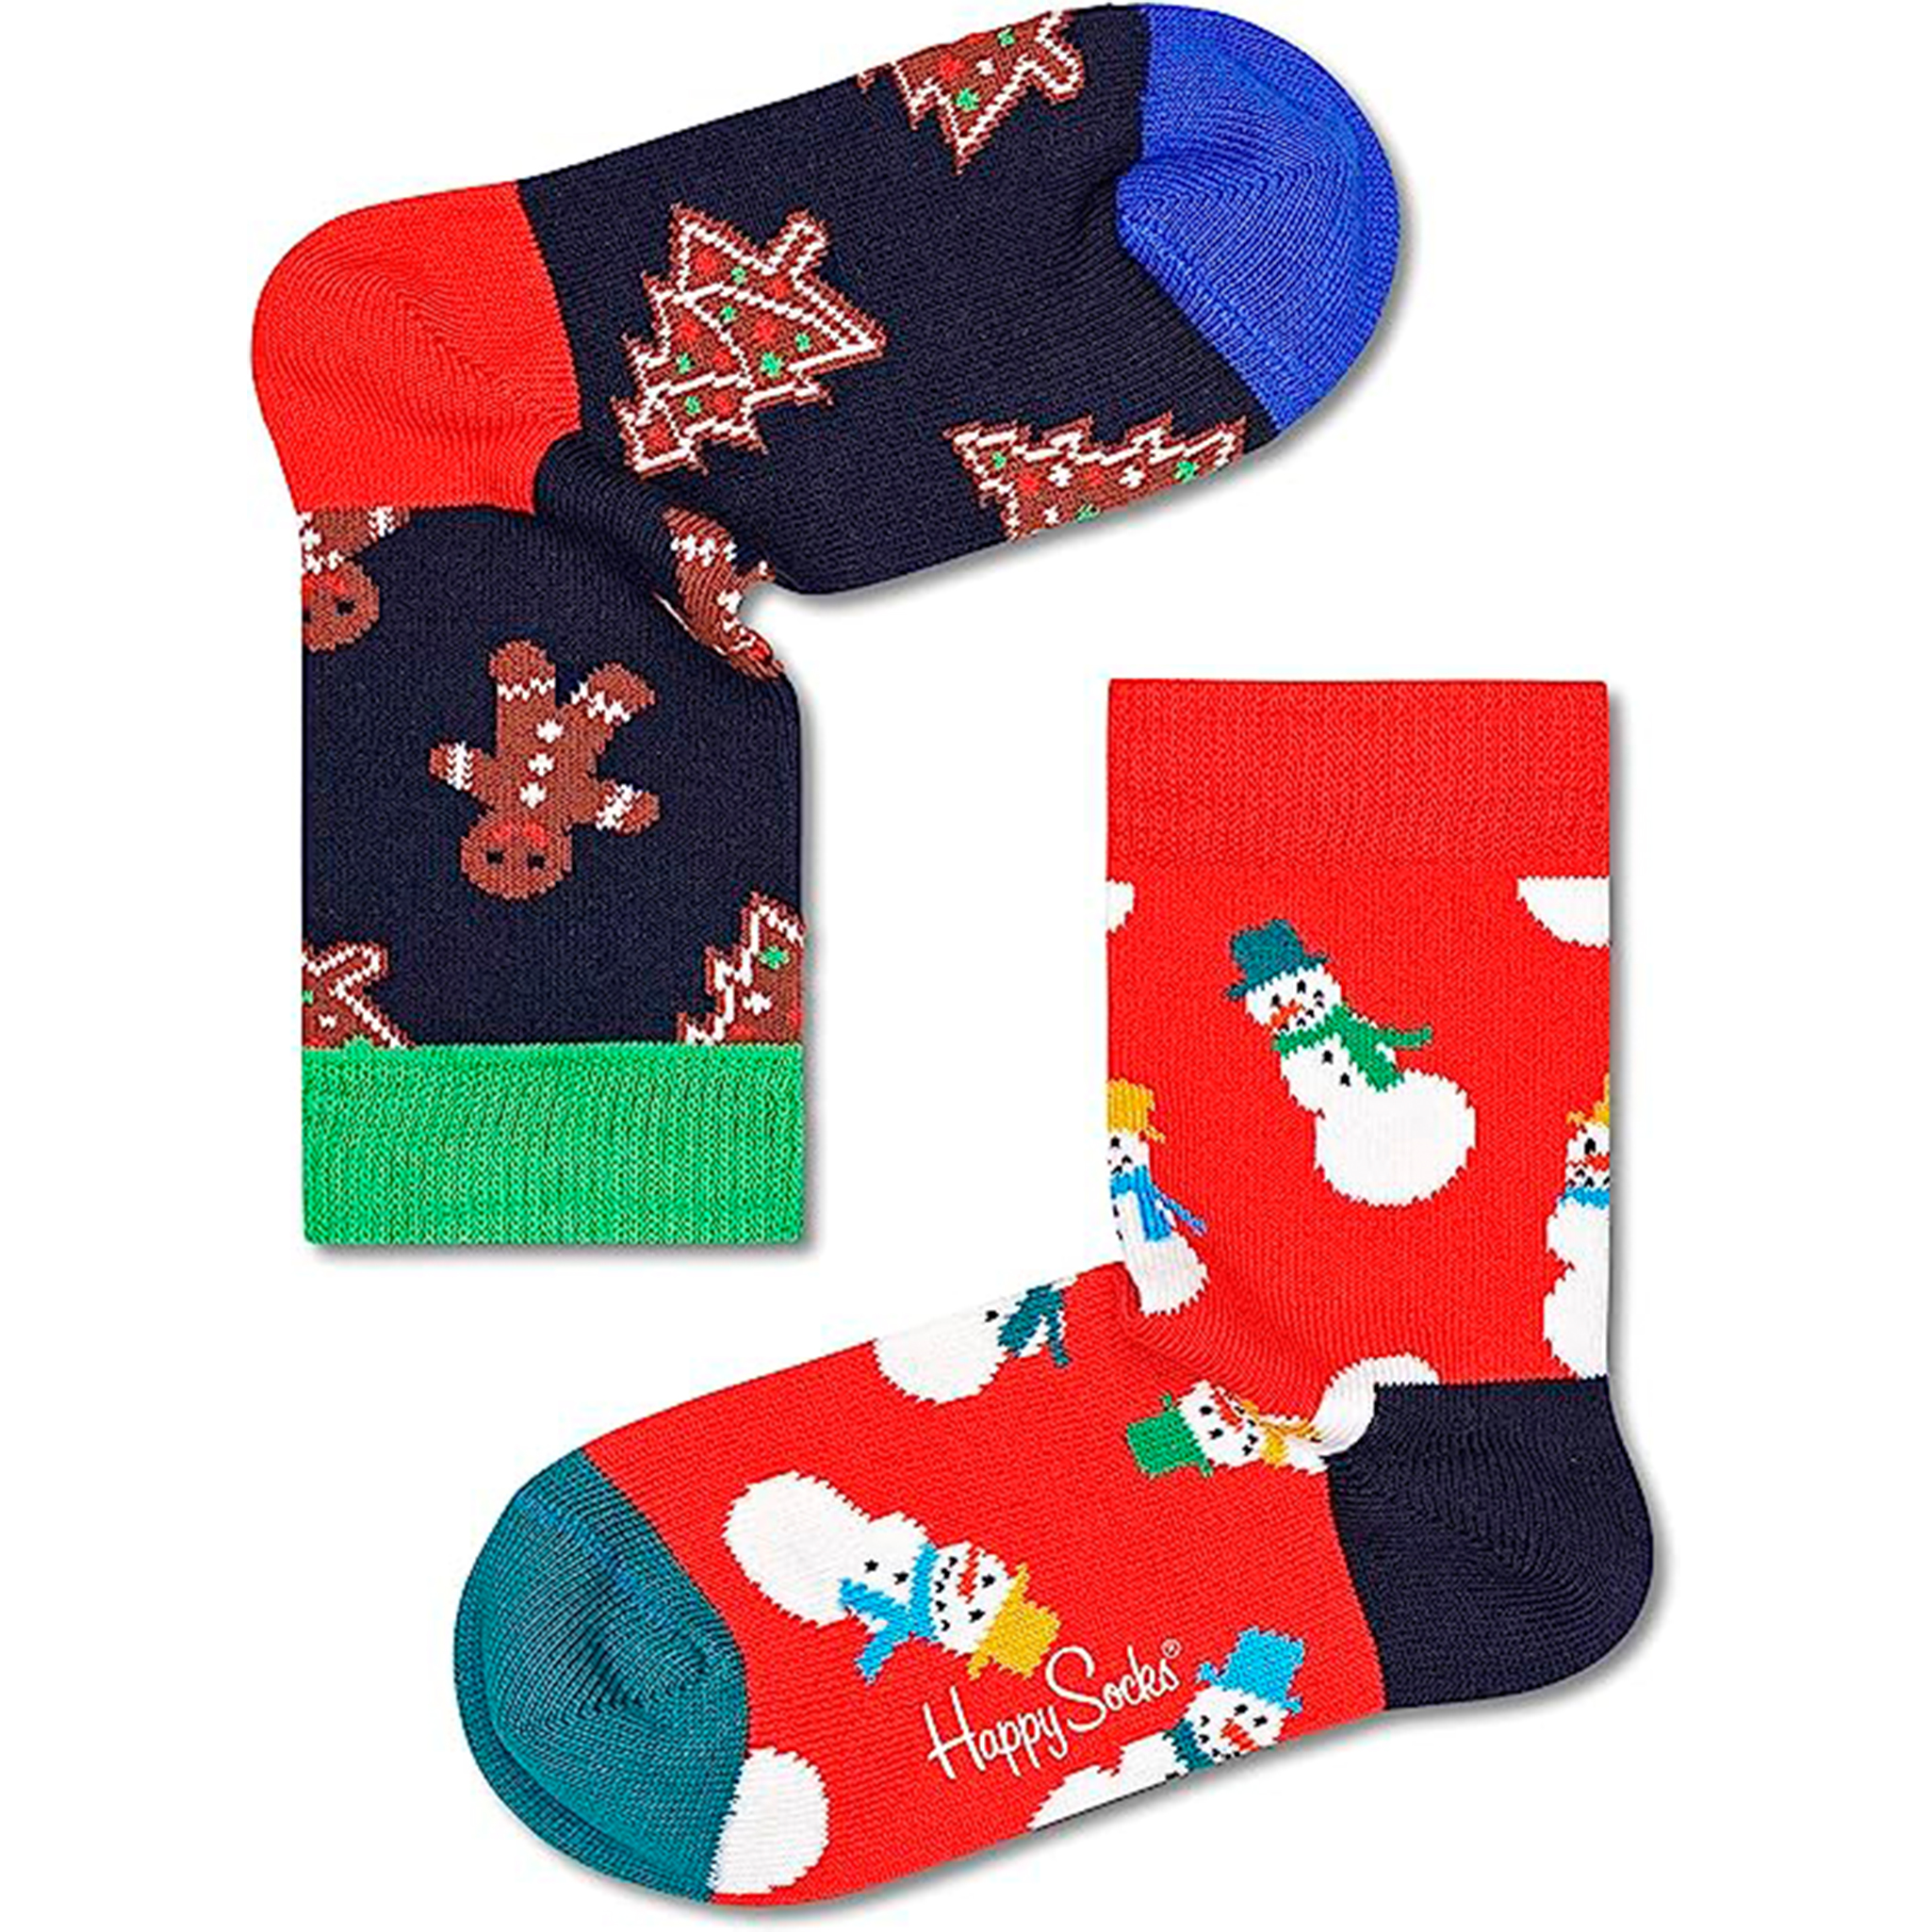 Par De Meias Kids Holidays Gift Set - multicolor - 